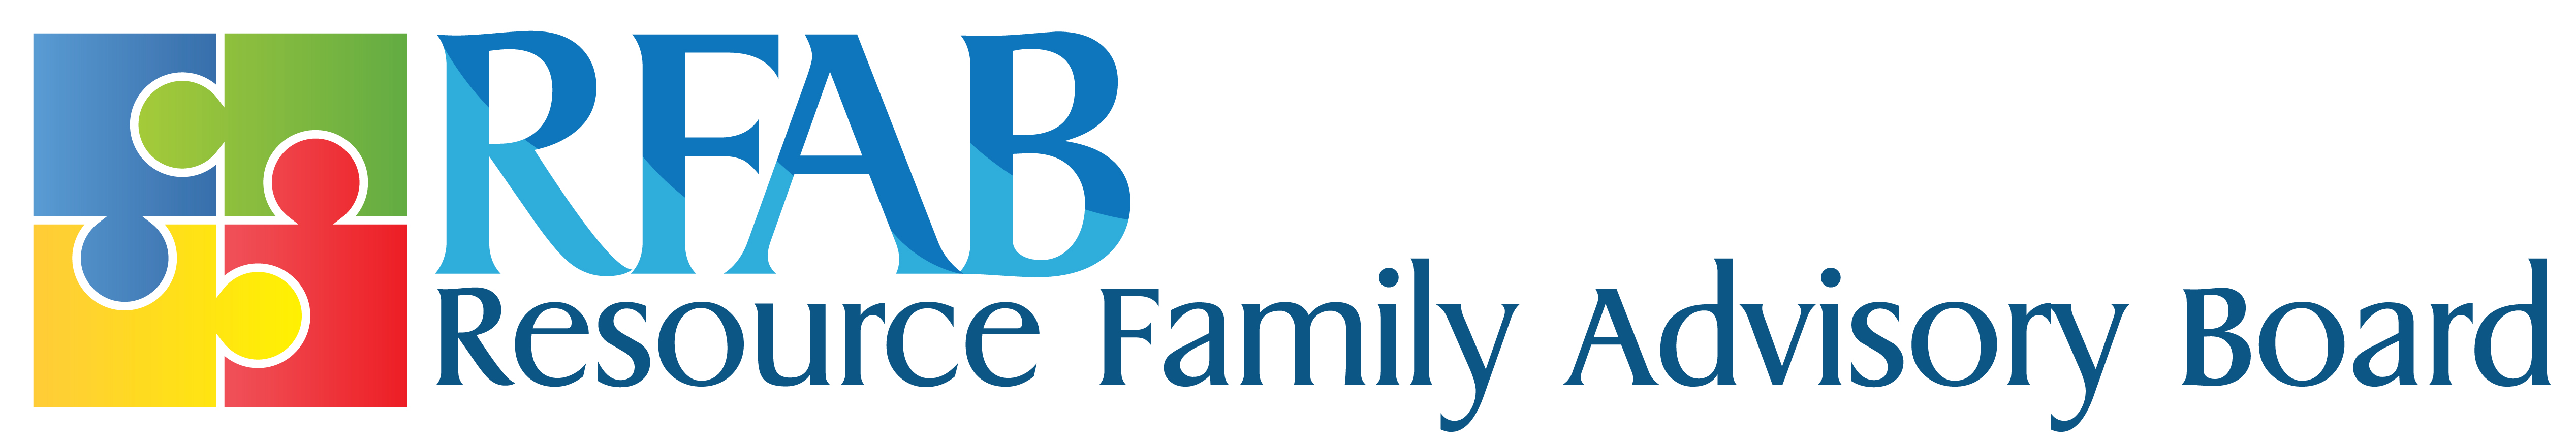 Resource Family Advisory Board logo